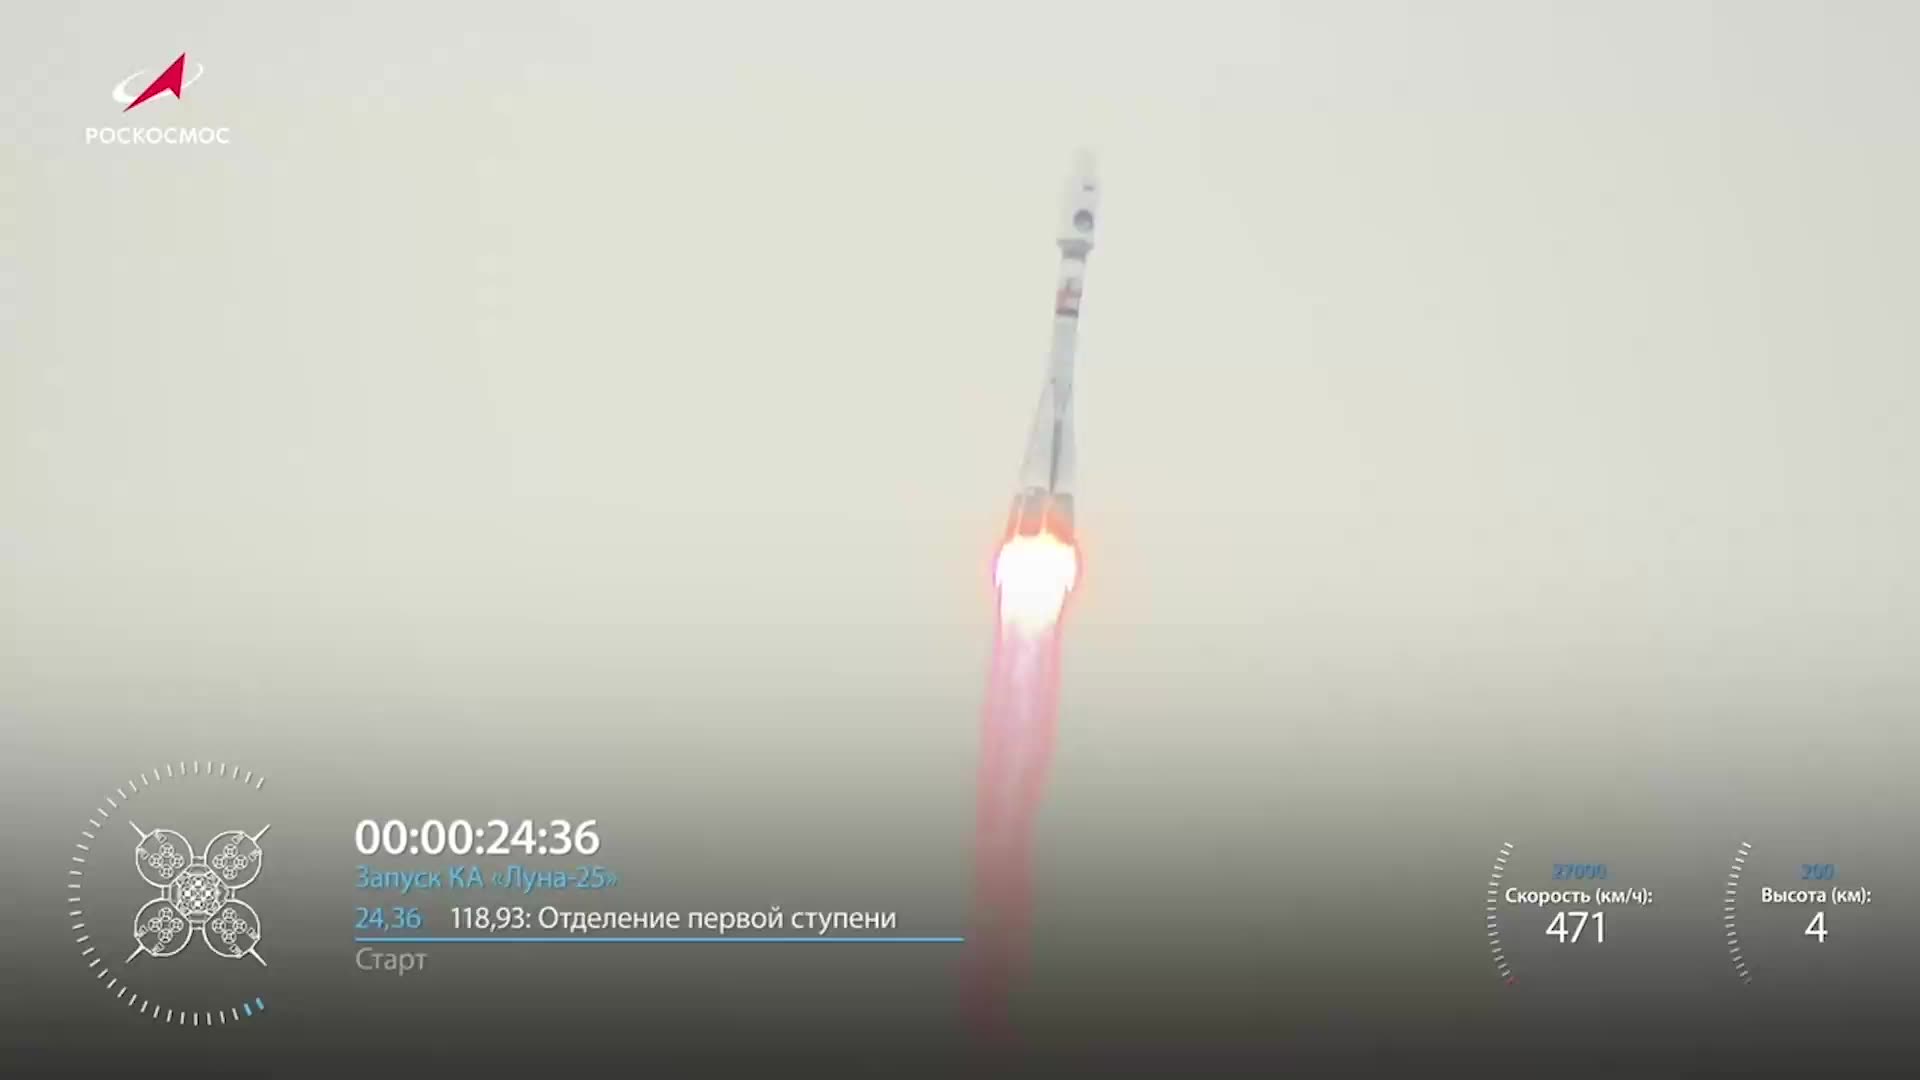 The meteor rocket - Fusée à propulsion